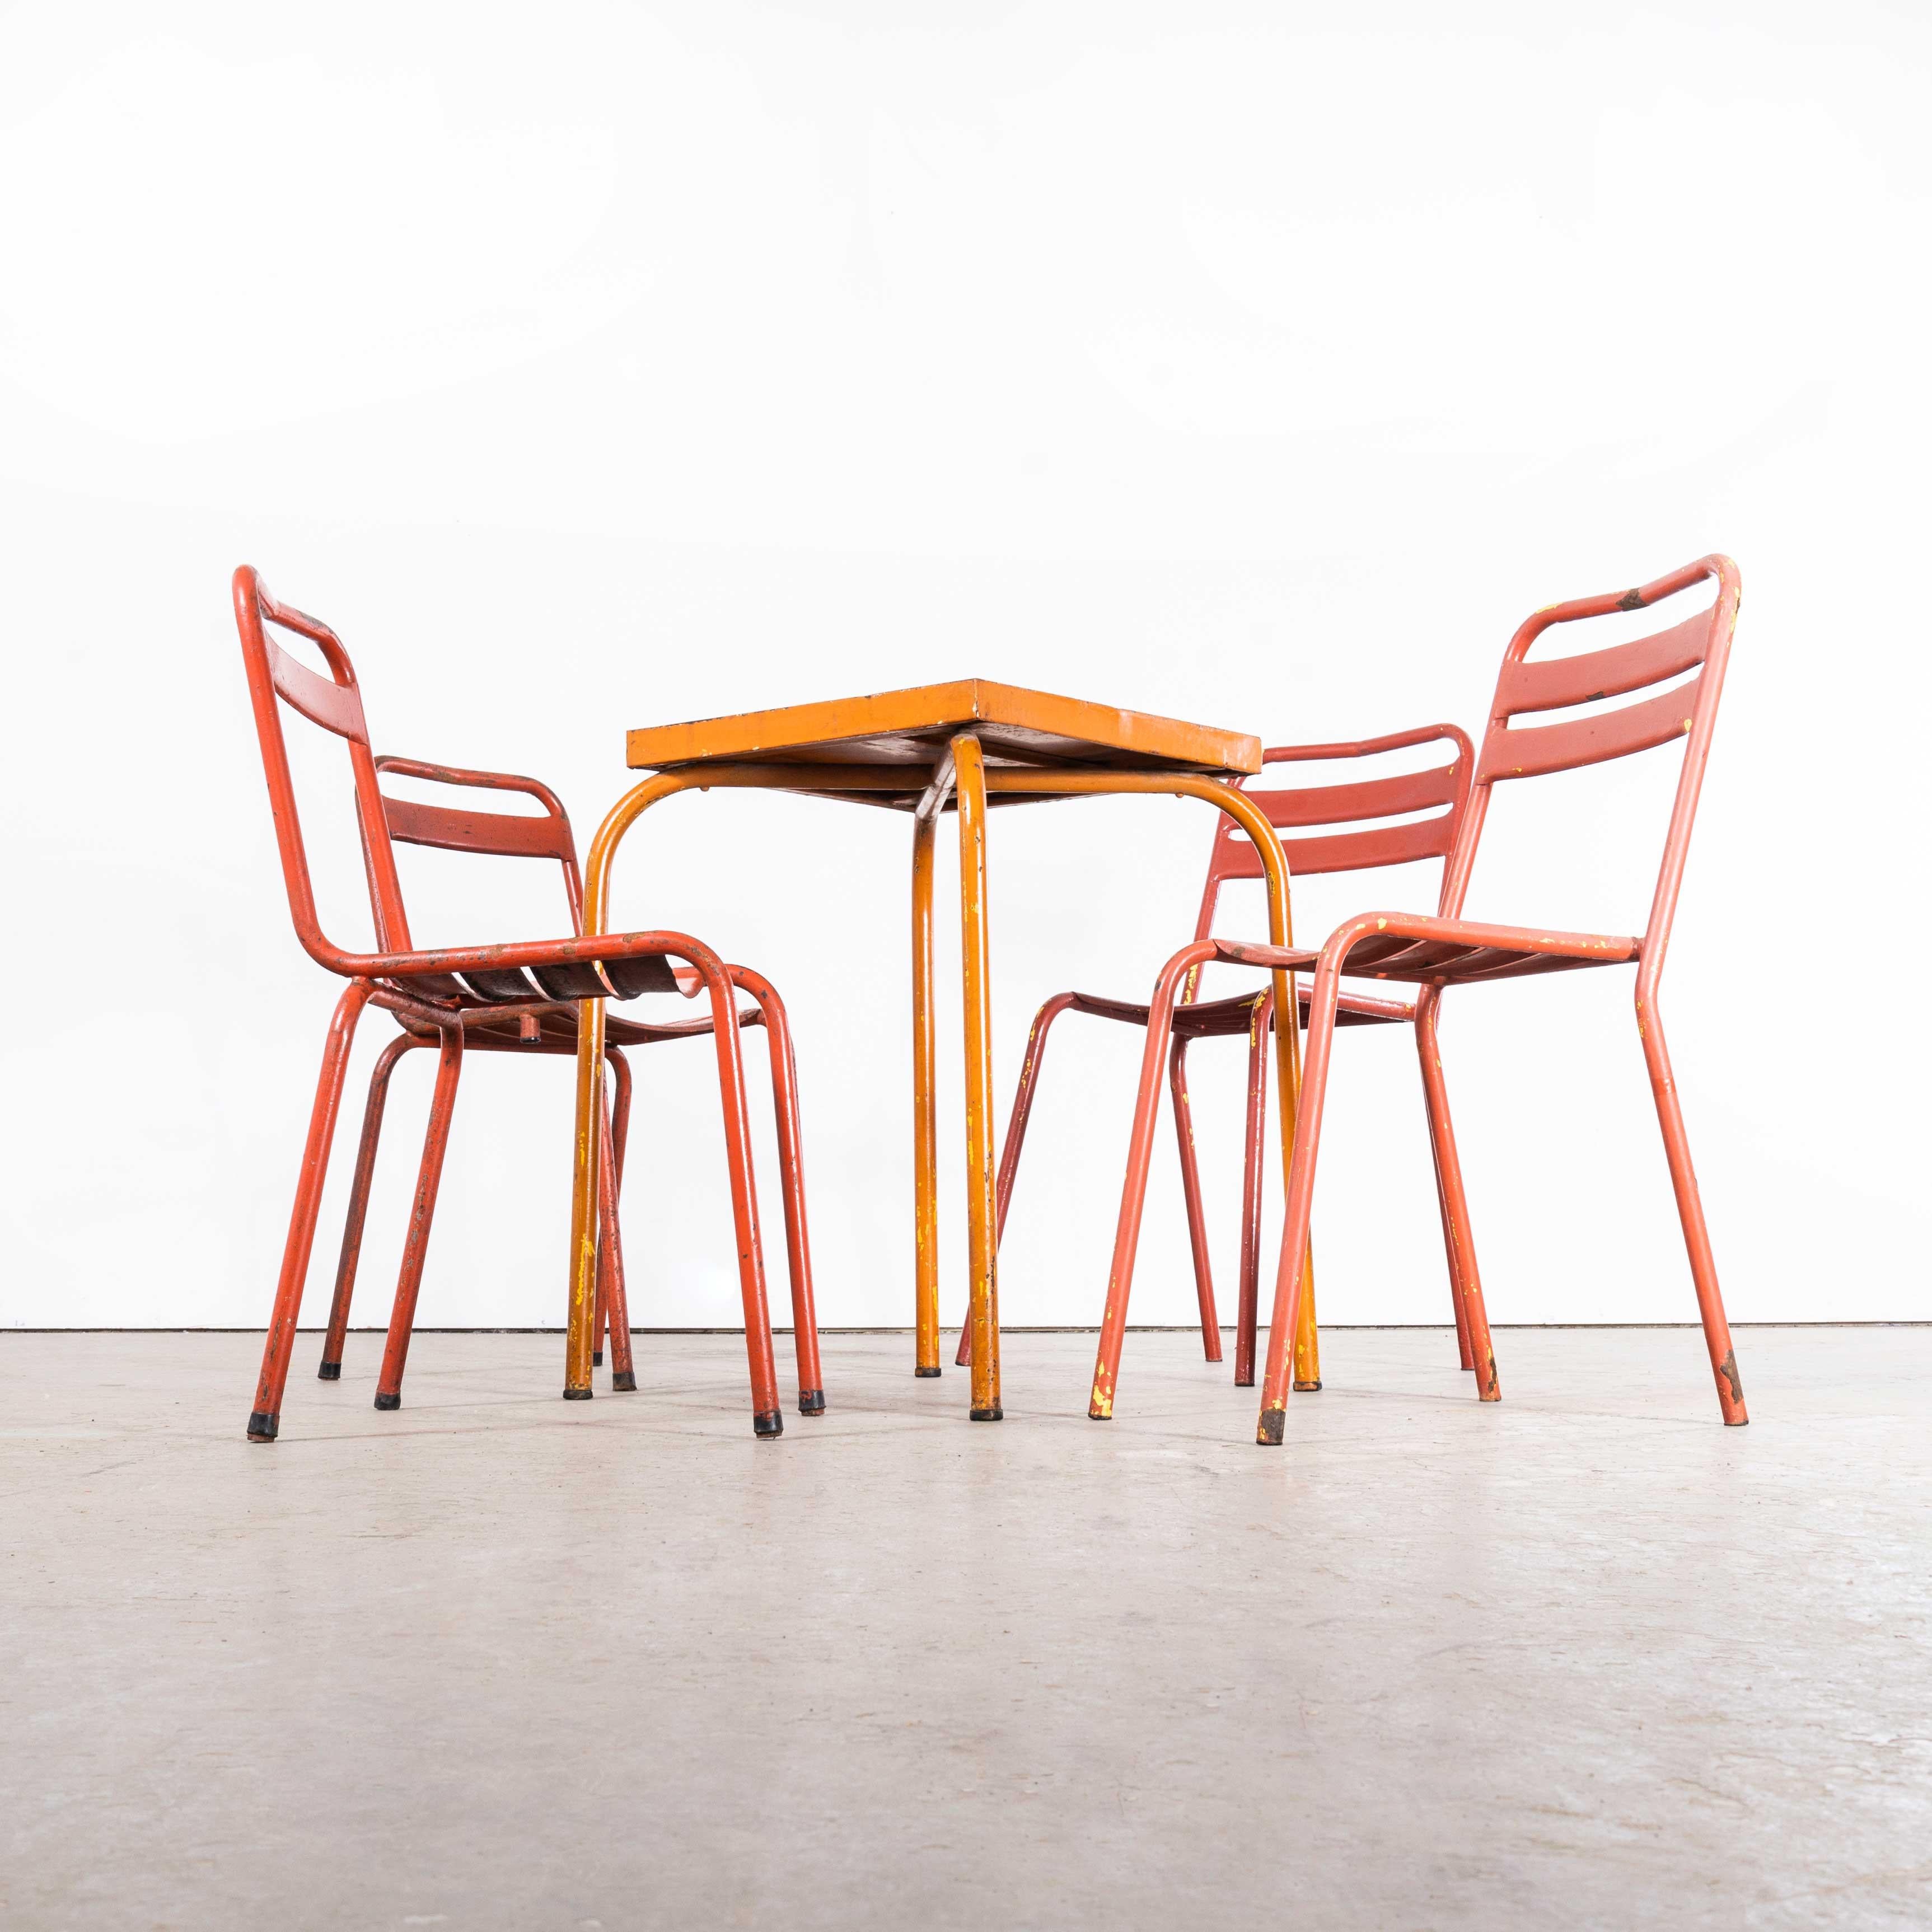 1950's Original Französisch Outdoor Tisch und Stuhl Set - Vier Stühle (2623)
1950's Original Französisch Outdoor Tisch und Stuhl Set - Vier Stühle. Diese Auflistung ist für einen Metalltisch und vier Metall-Gartenstühle, wie gezeigt, mit unpassenden